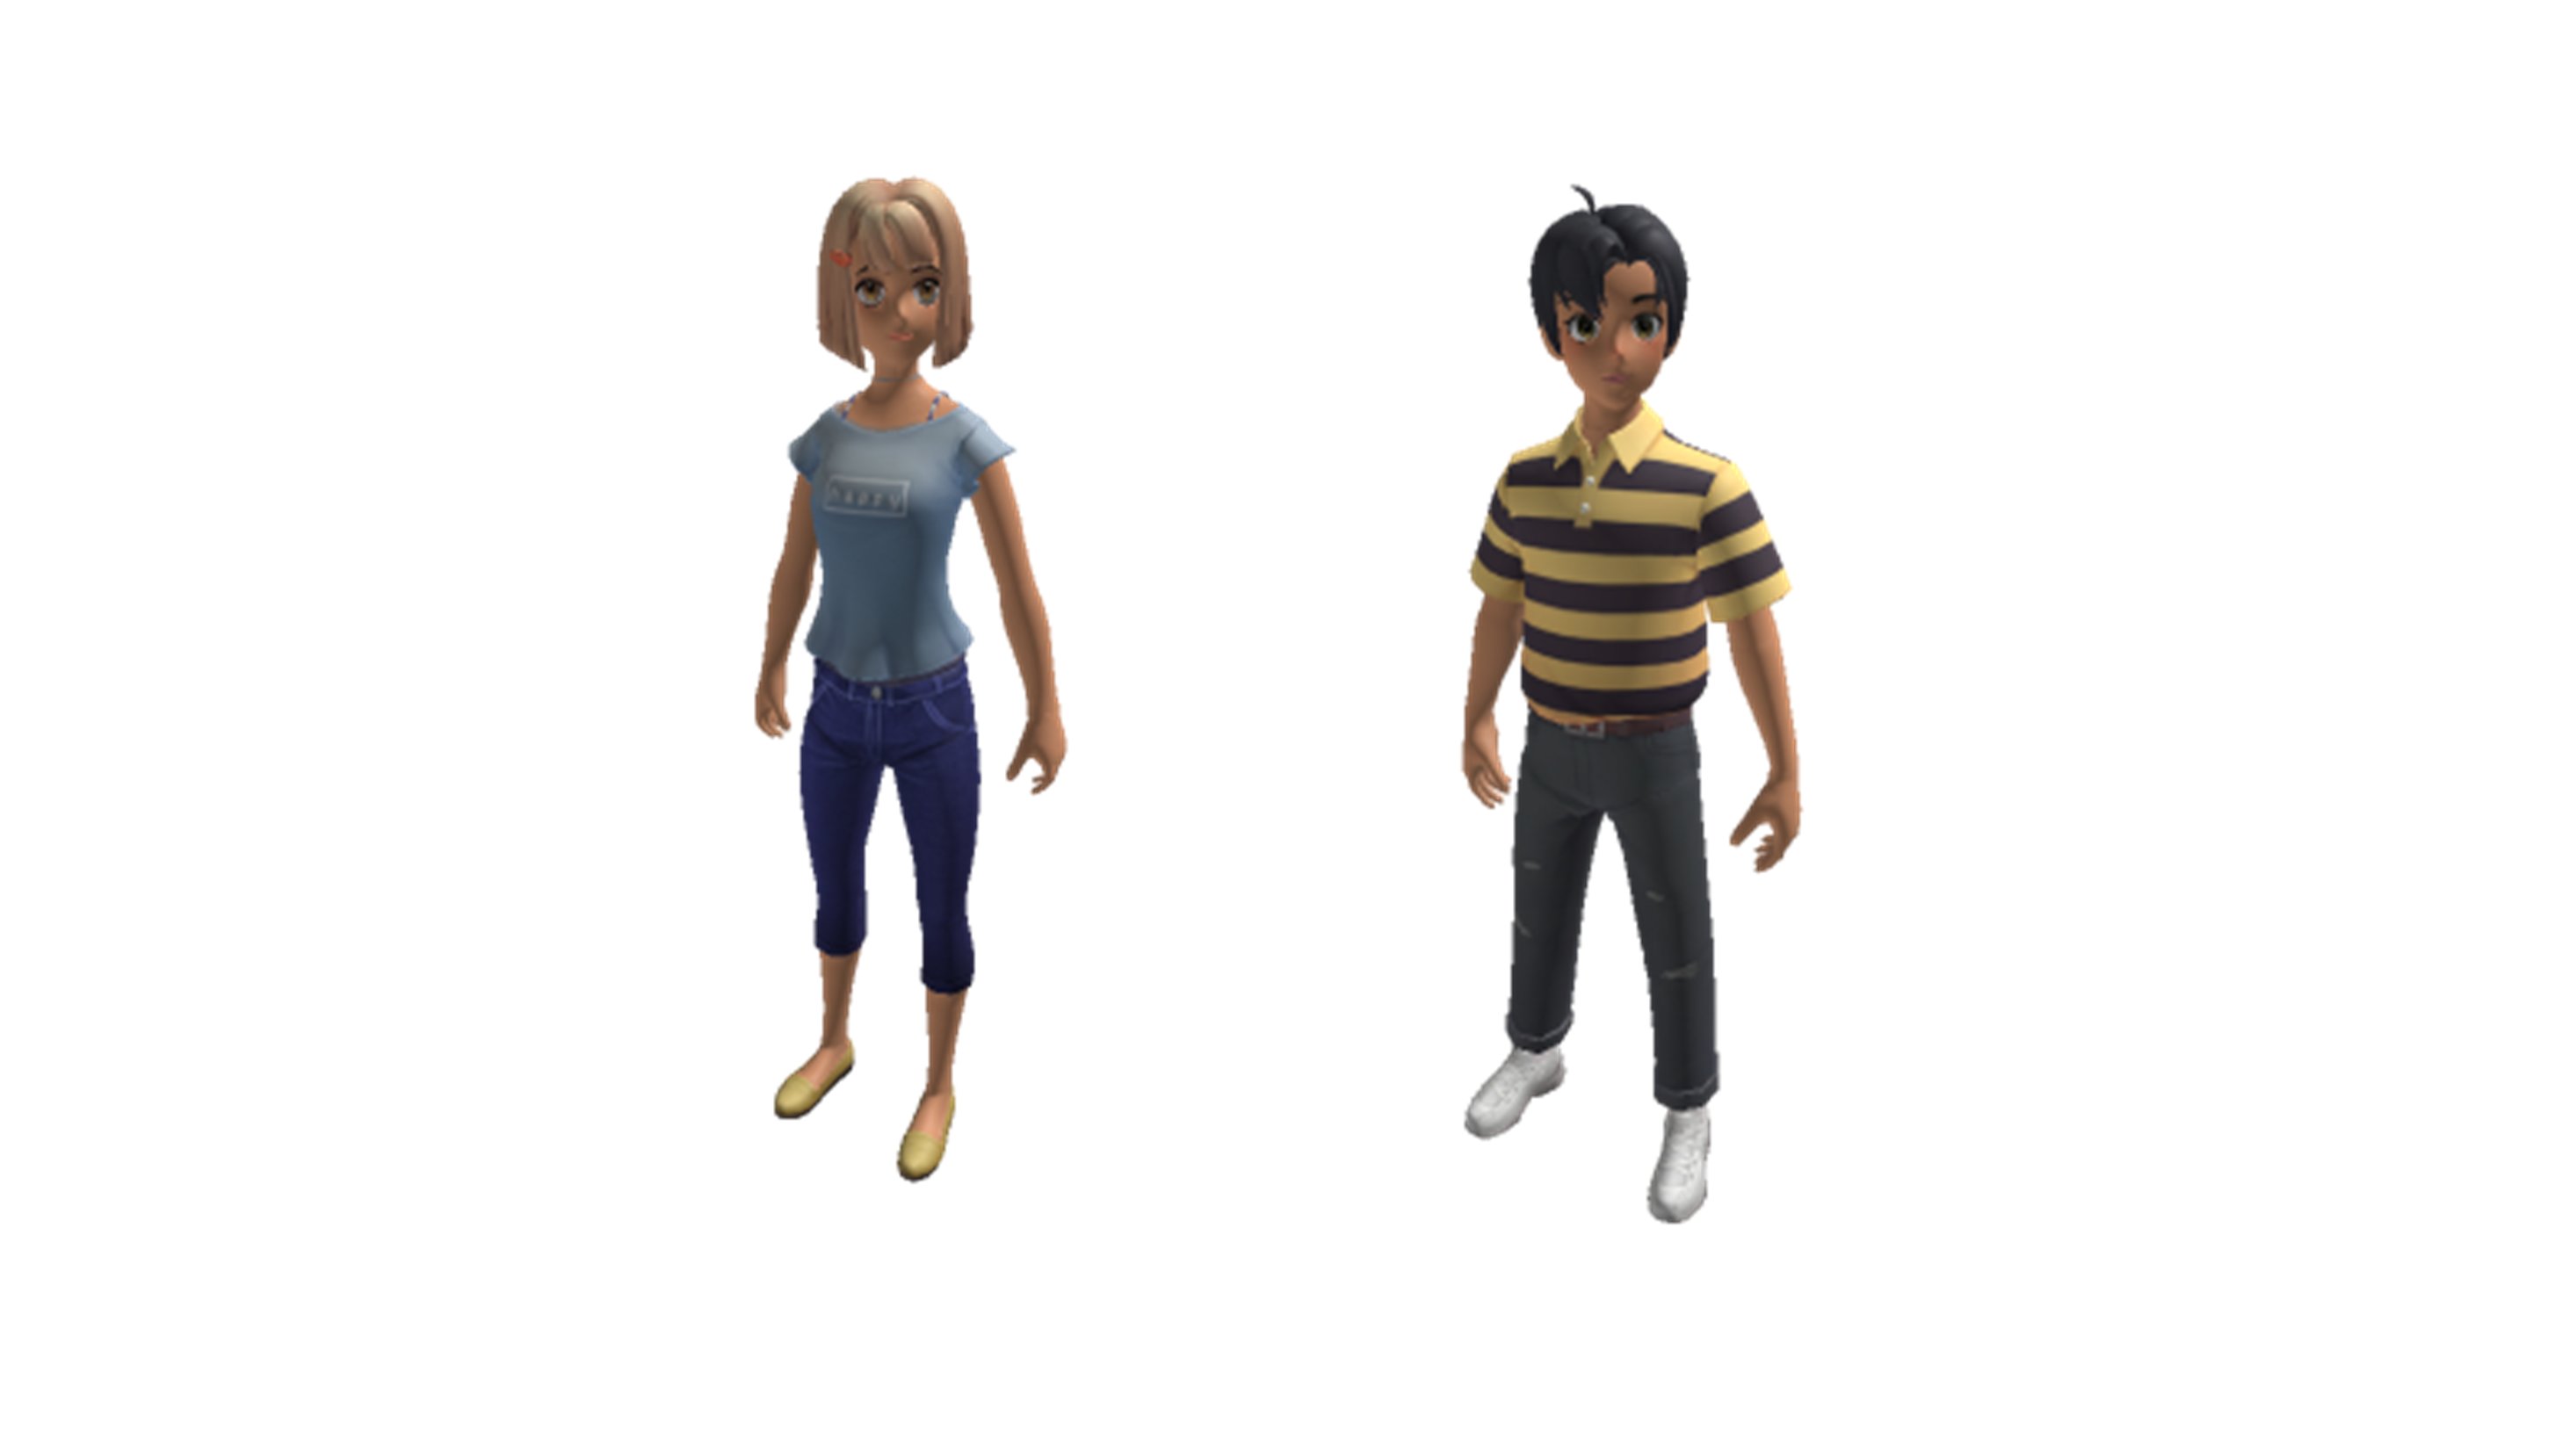 Brand new avatars: Năm 2024 sẽ chào đón những avatar hoàn toàn mới. Với các tính năng độc đáo và ấn tượng, bạn sẽ có những trải nghiệm ảo tuyệt vời và đầy thú vị. Hãy khám phá những avatar mới nhất trong trò chơi này và trở thành một người chơi hàng đầu.